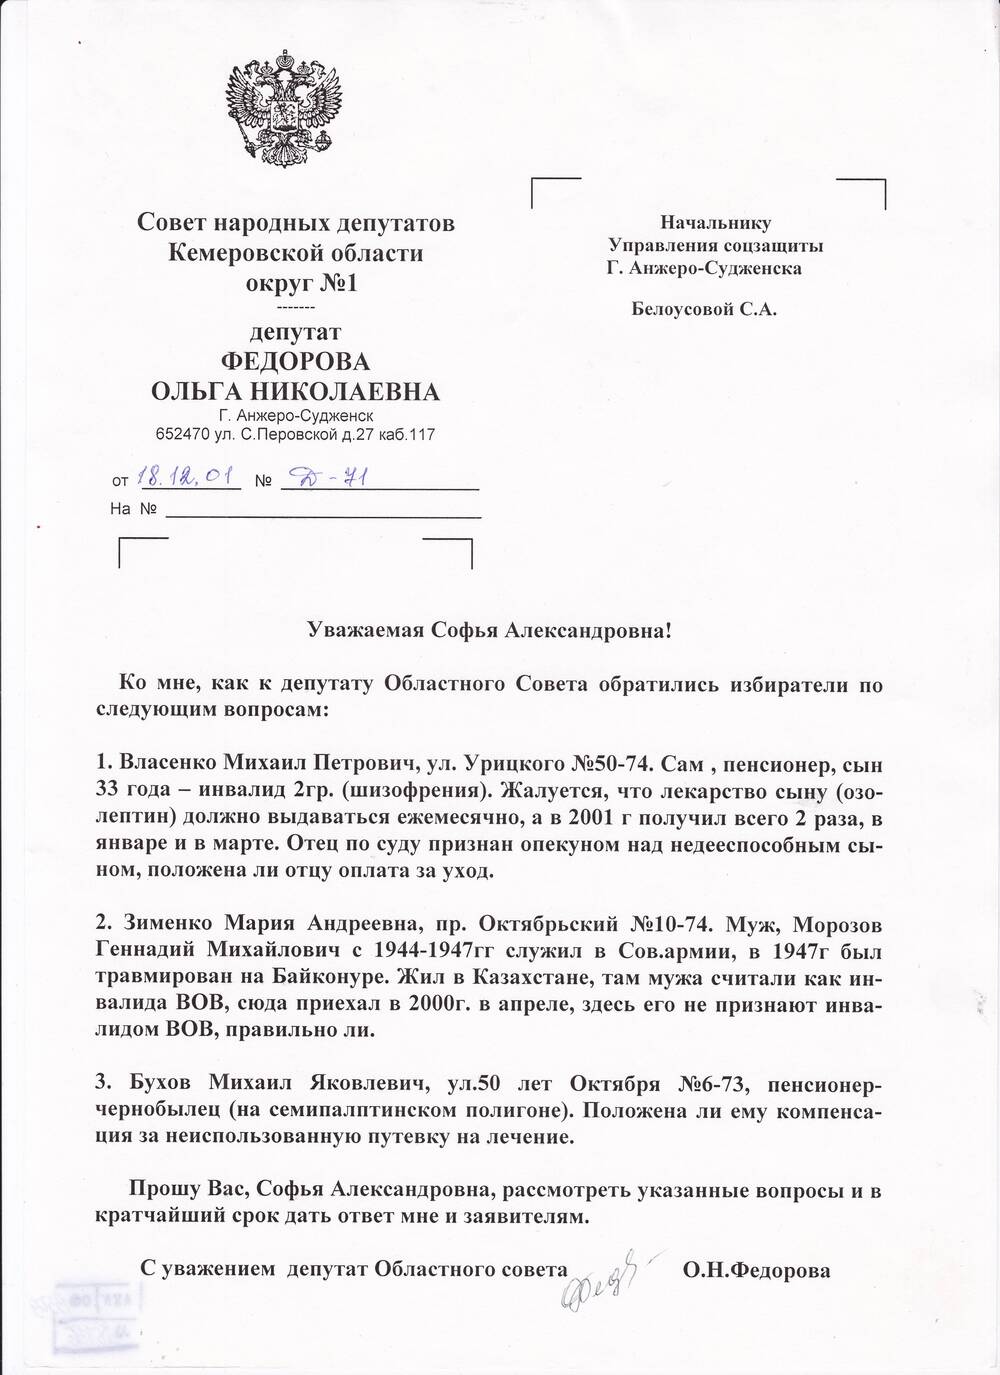 Запрос депутатский Федоровой О.Н. от 18.12.2001